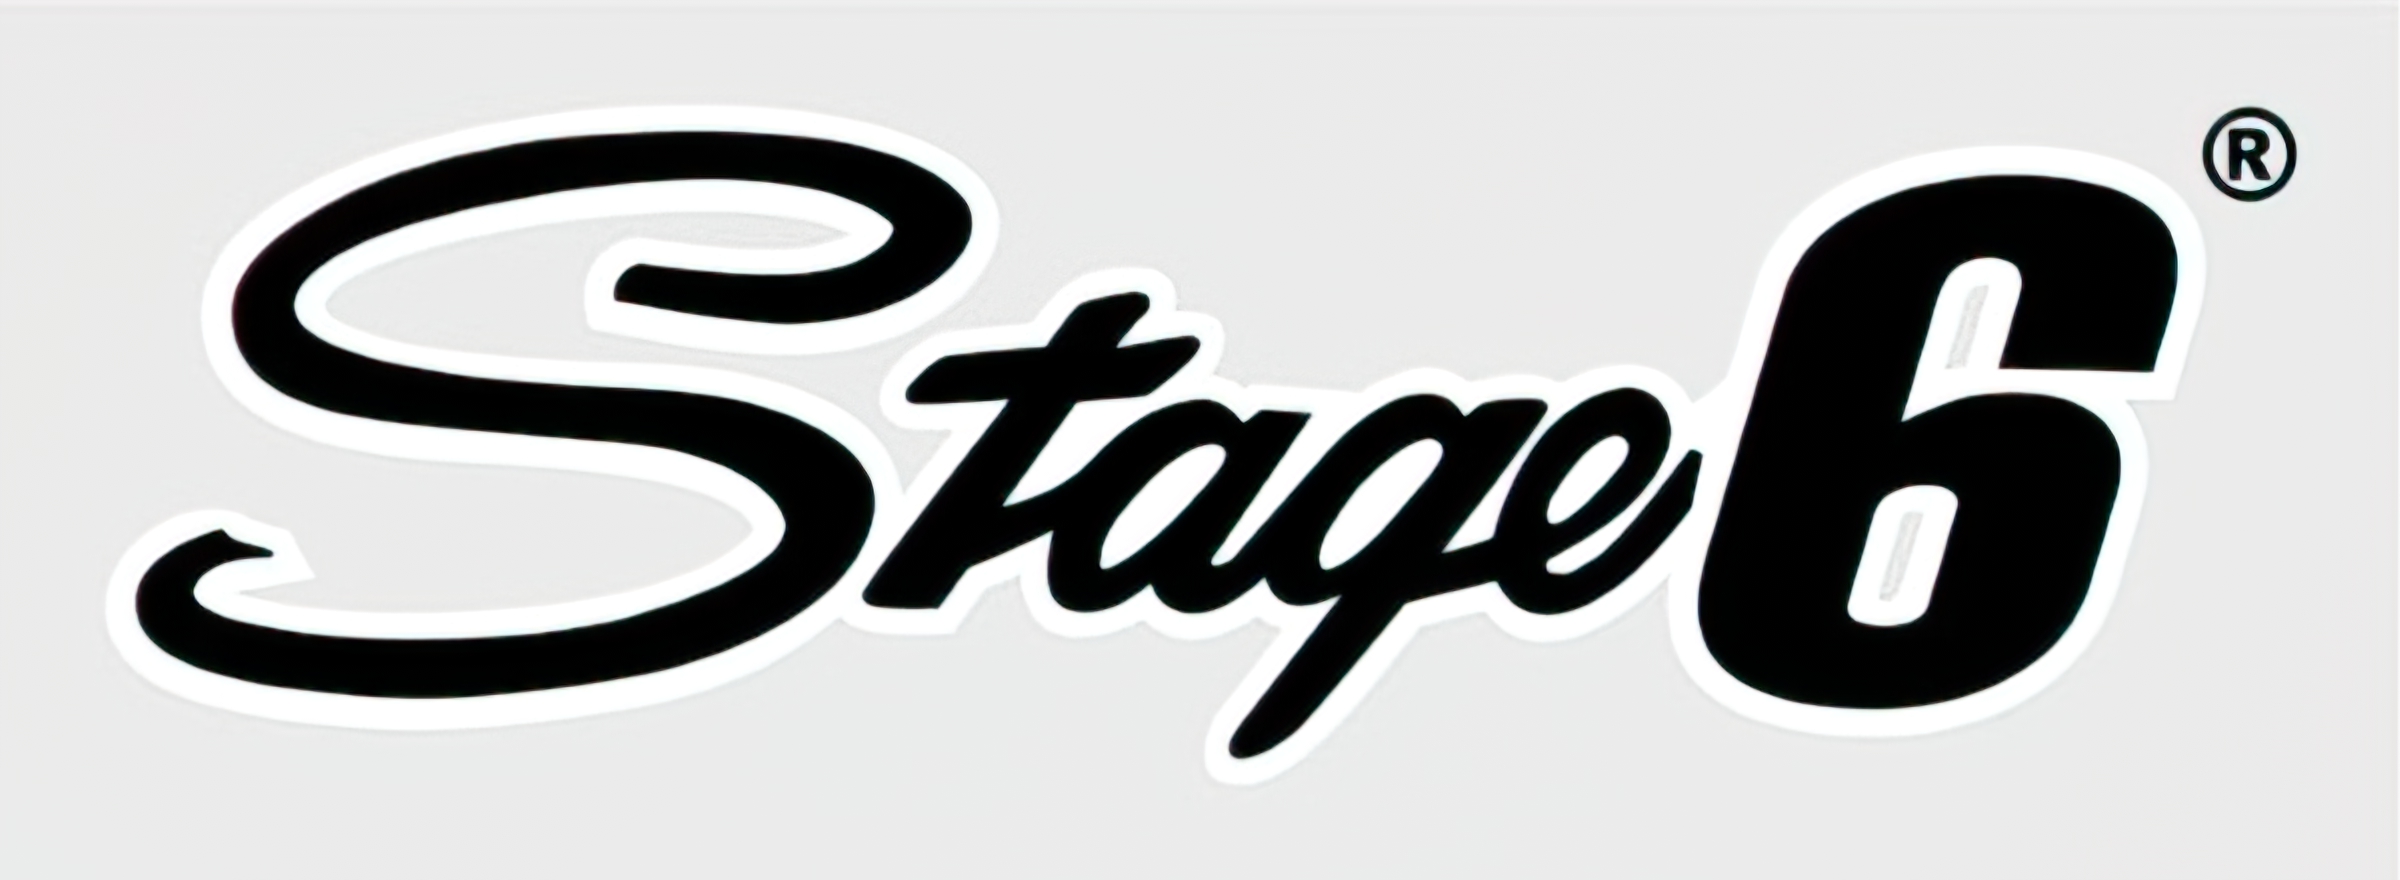 Stage6 Blog  News für Roller, Schalter und Maxiscooter